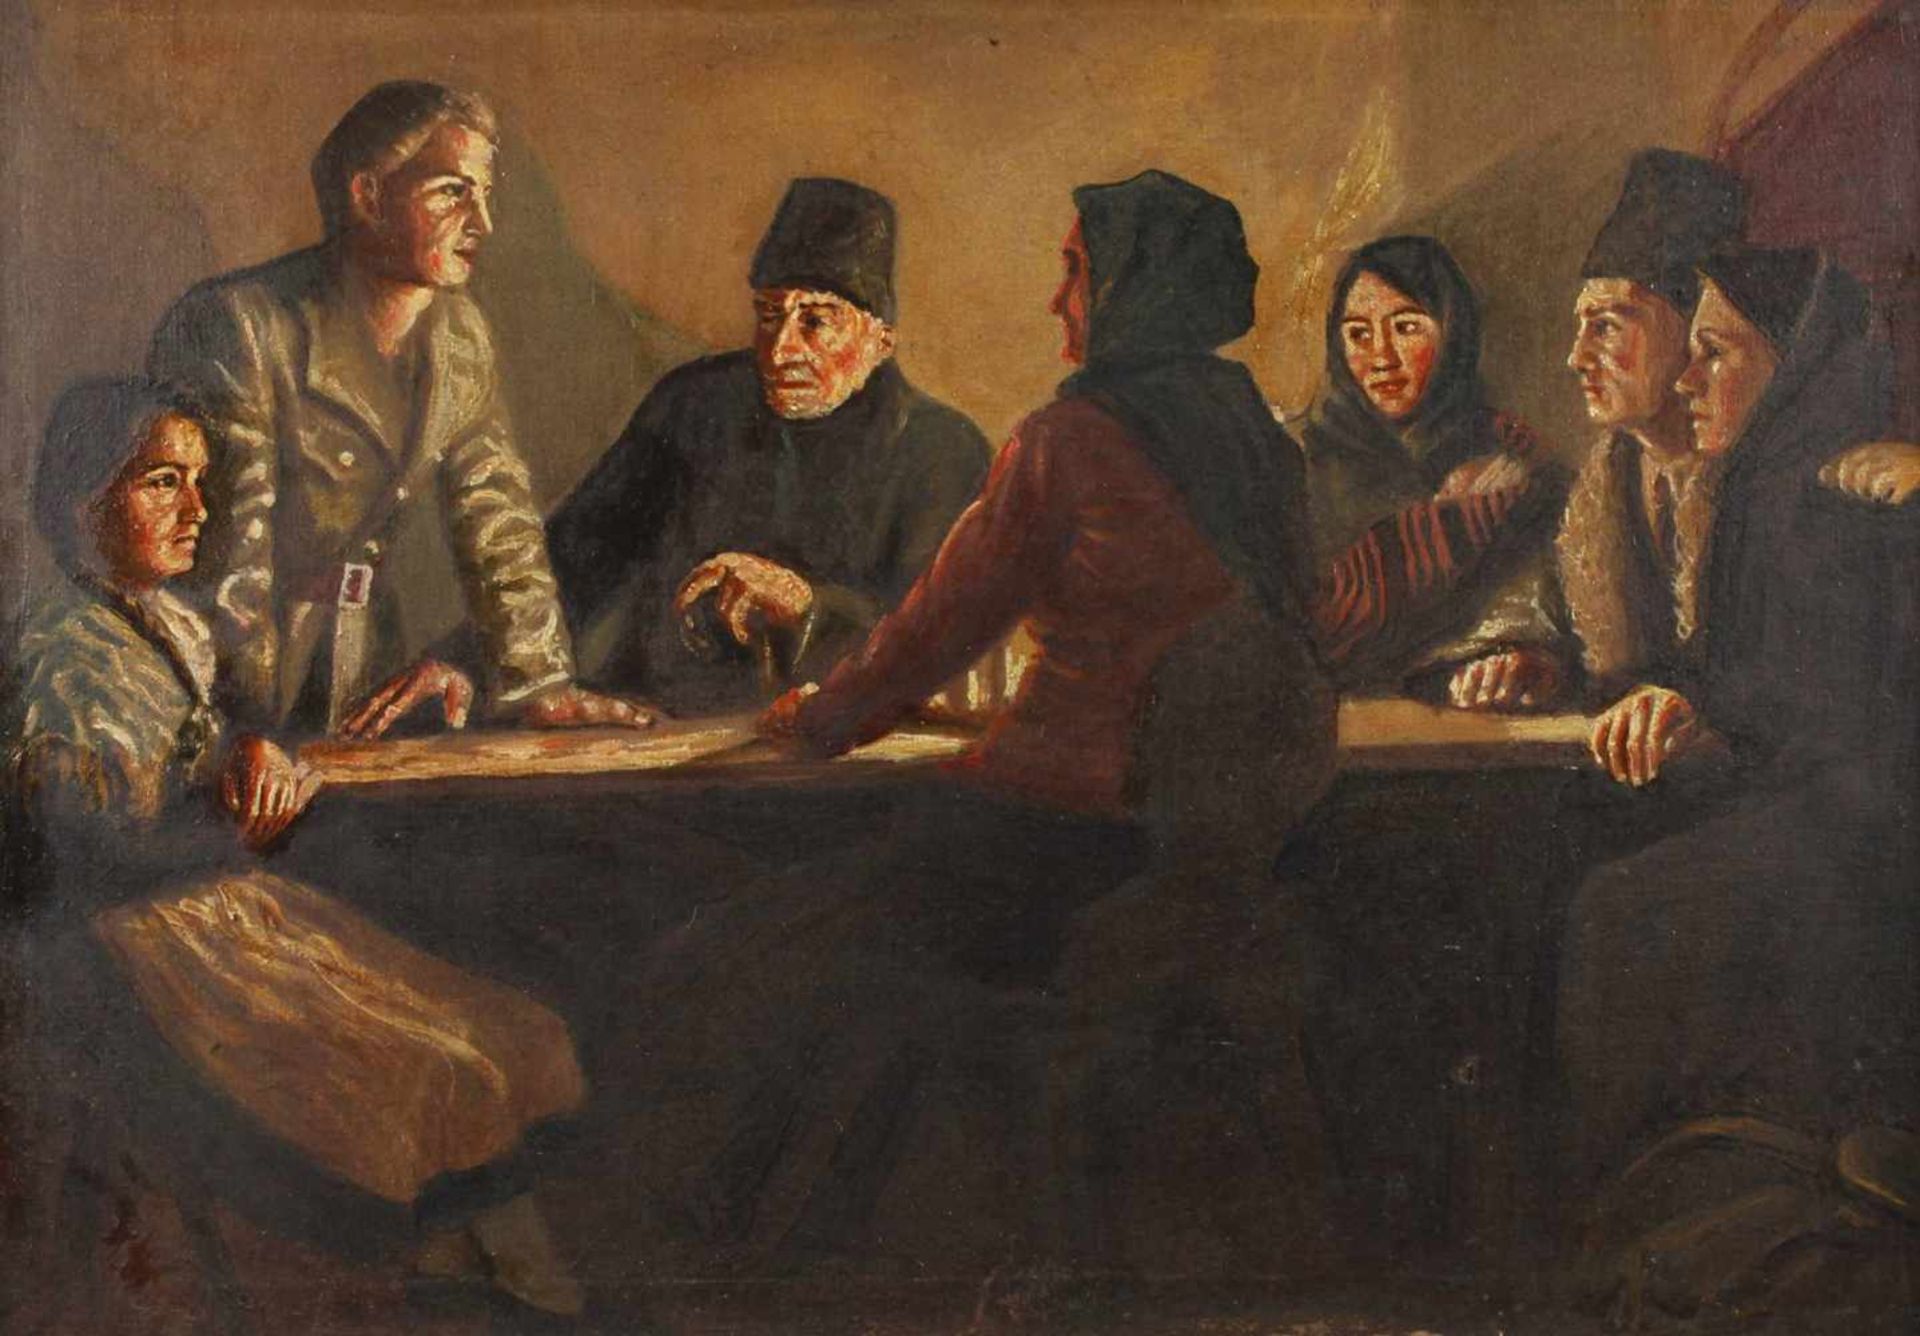 Gesprächsrunde im Kerzenschein wohl Szene aus dem revolutionären Russland, um 1918, junger Mann in